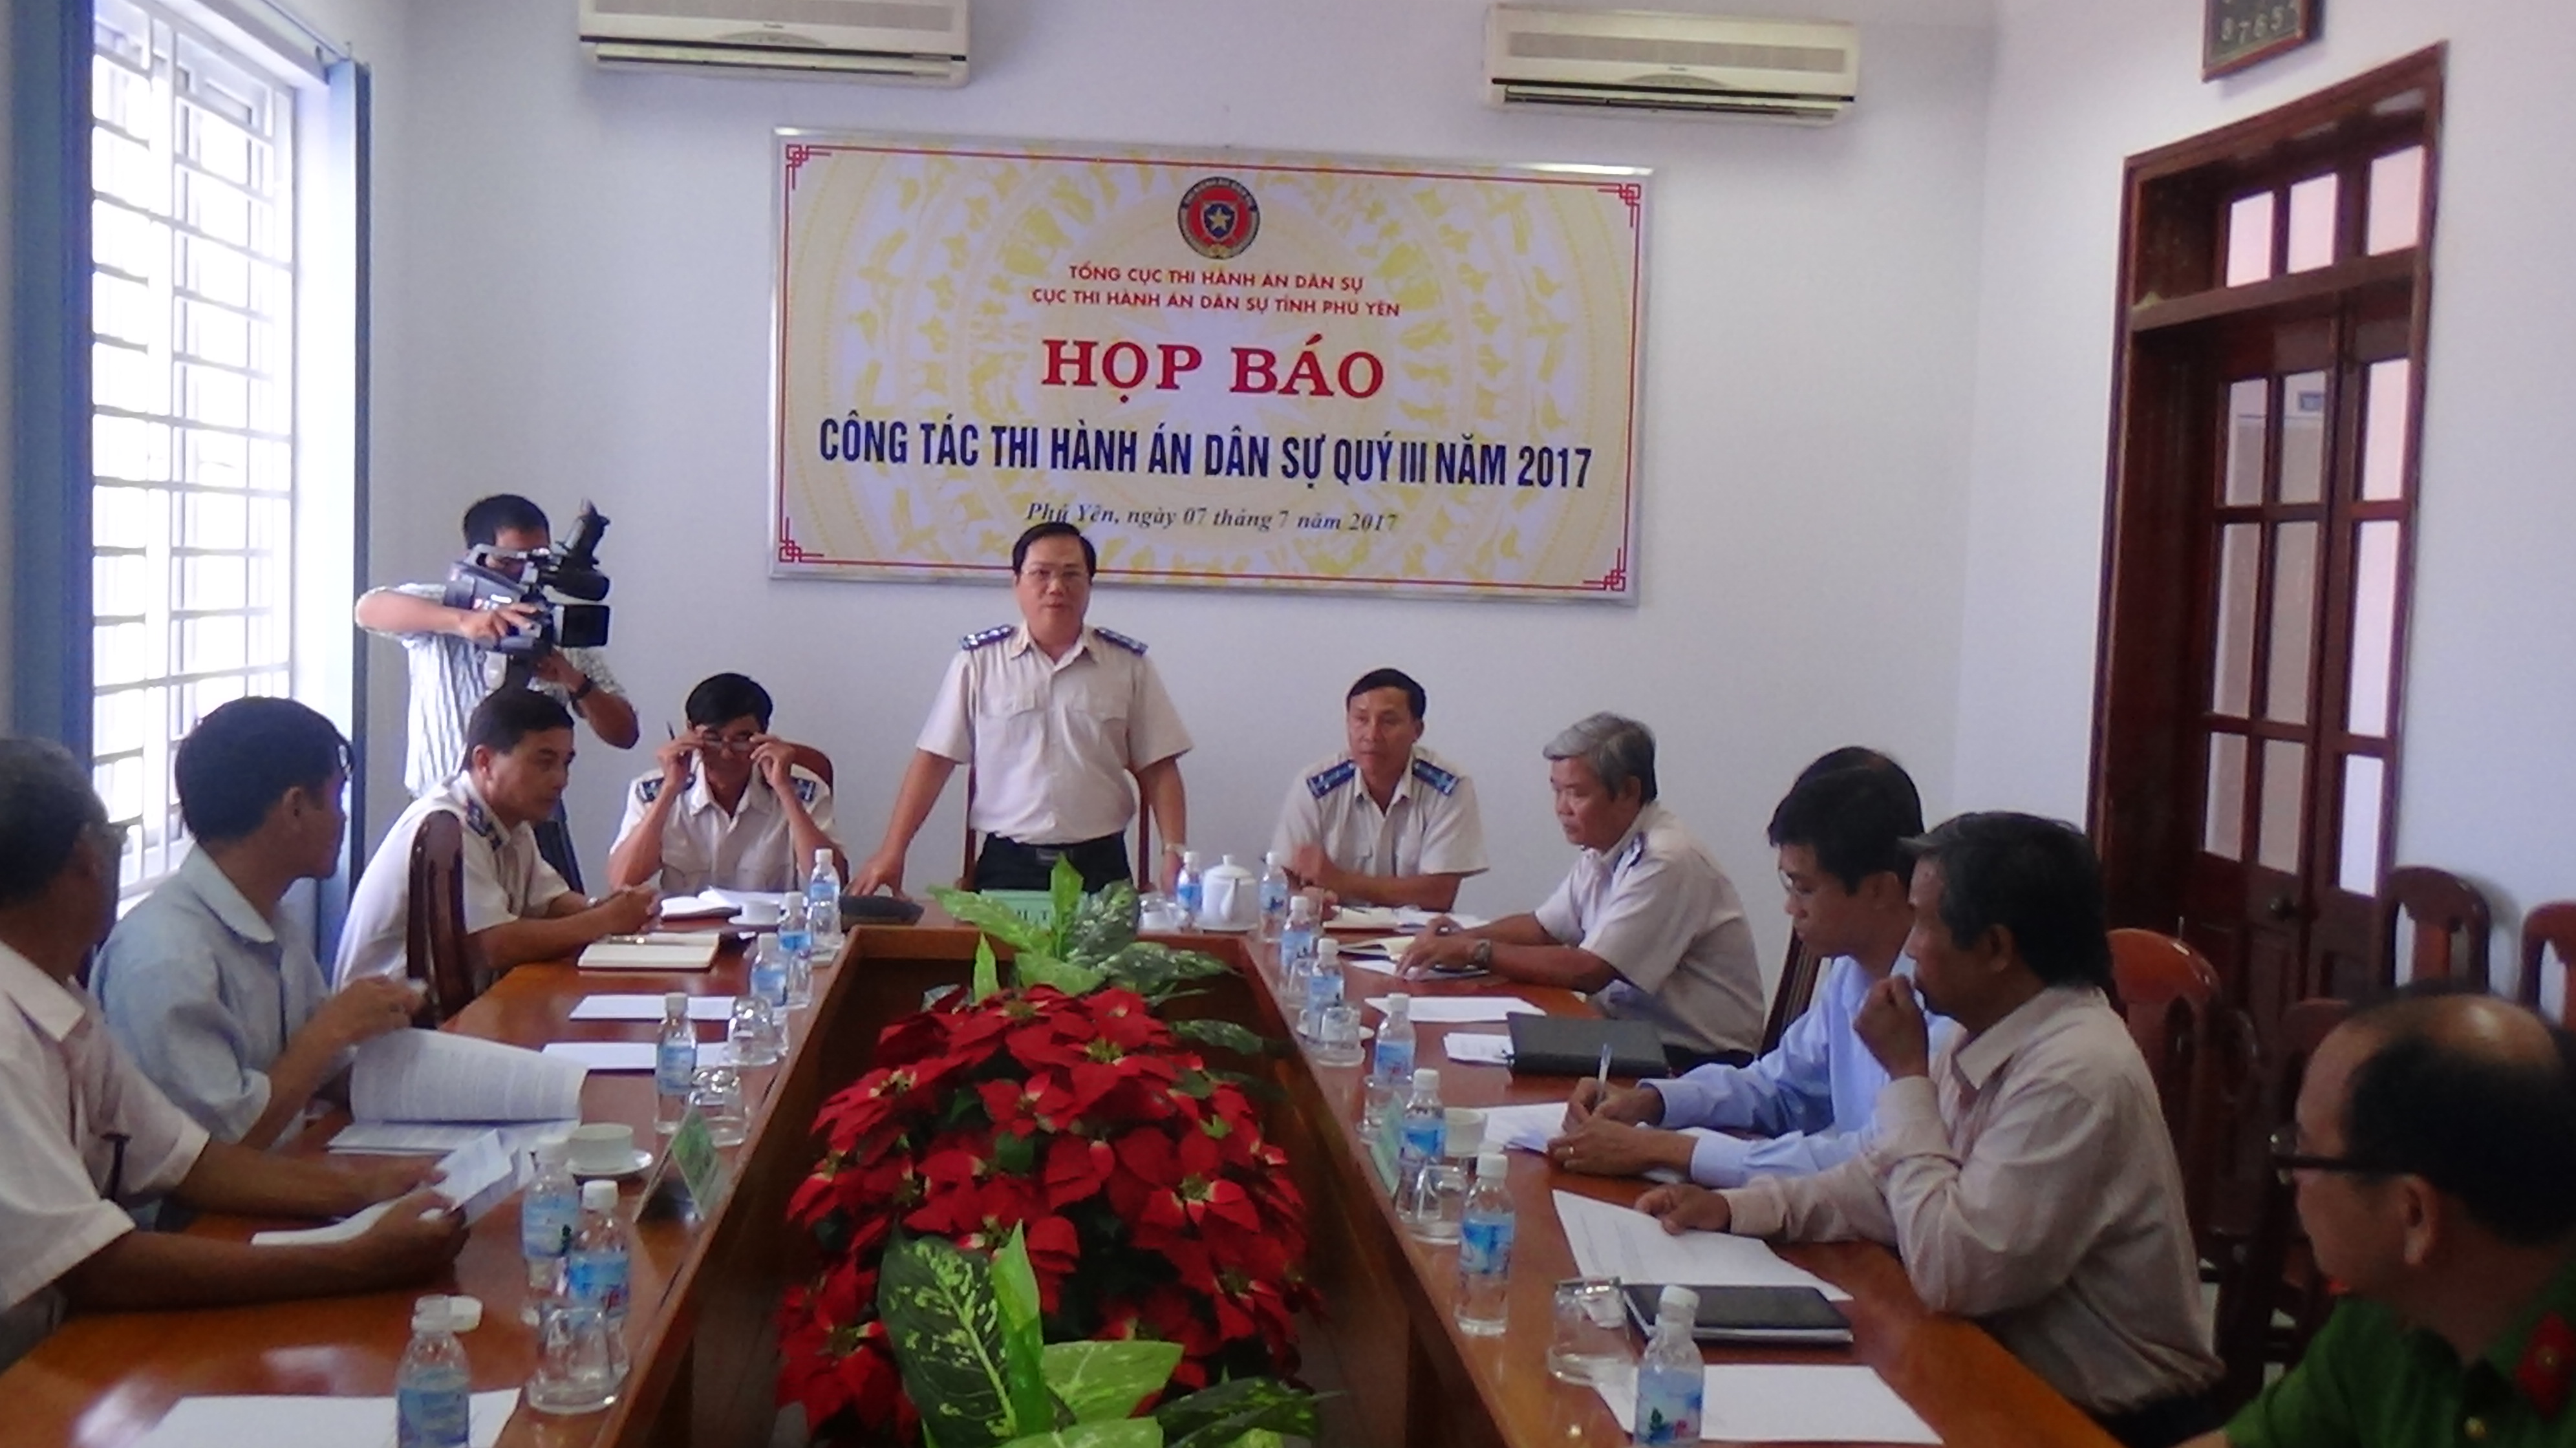 Cục THADS tỉnh Phú Yên: Tổ chức họp báo về công tác THADS, hành chính Quý III năm 2017 trên địa bàn tỉnh